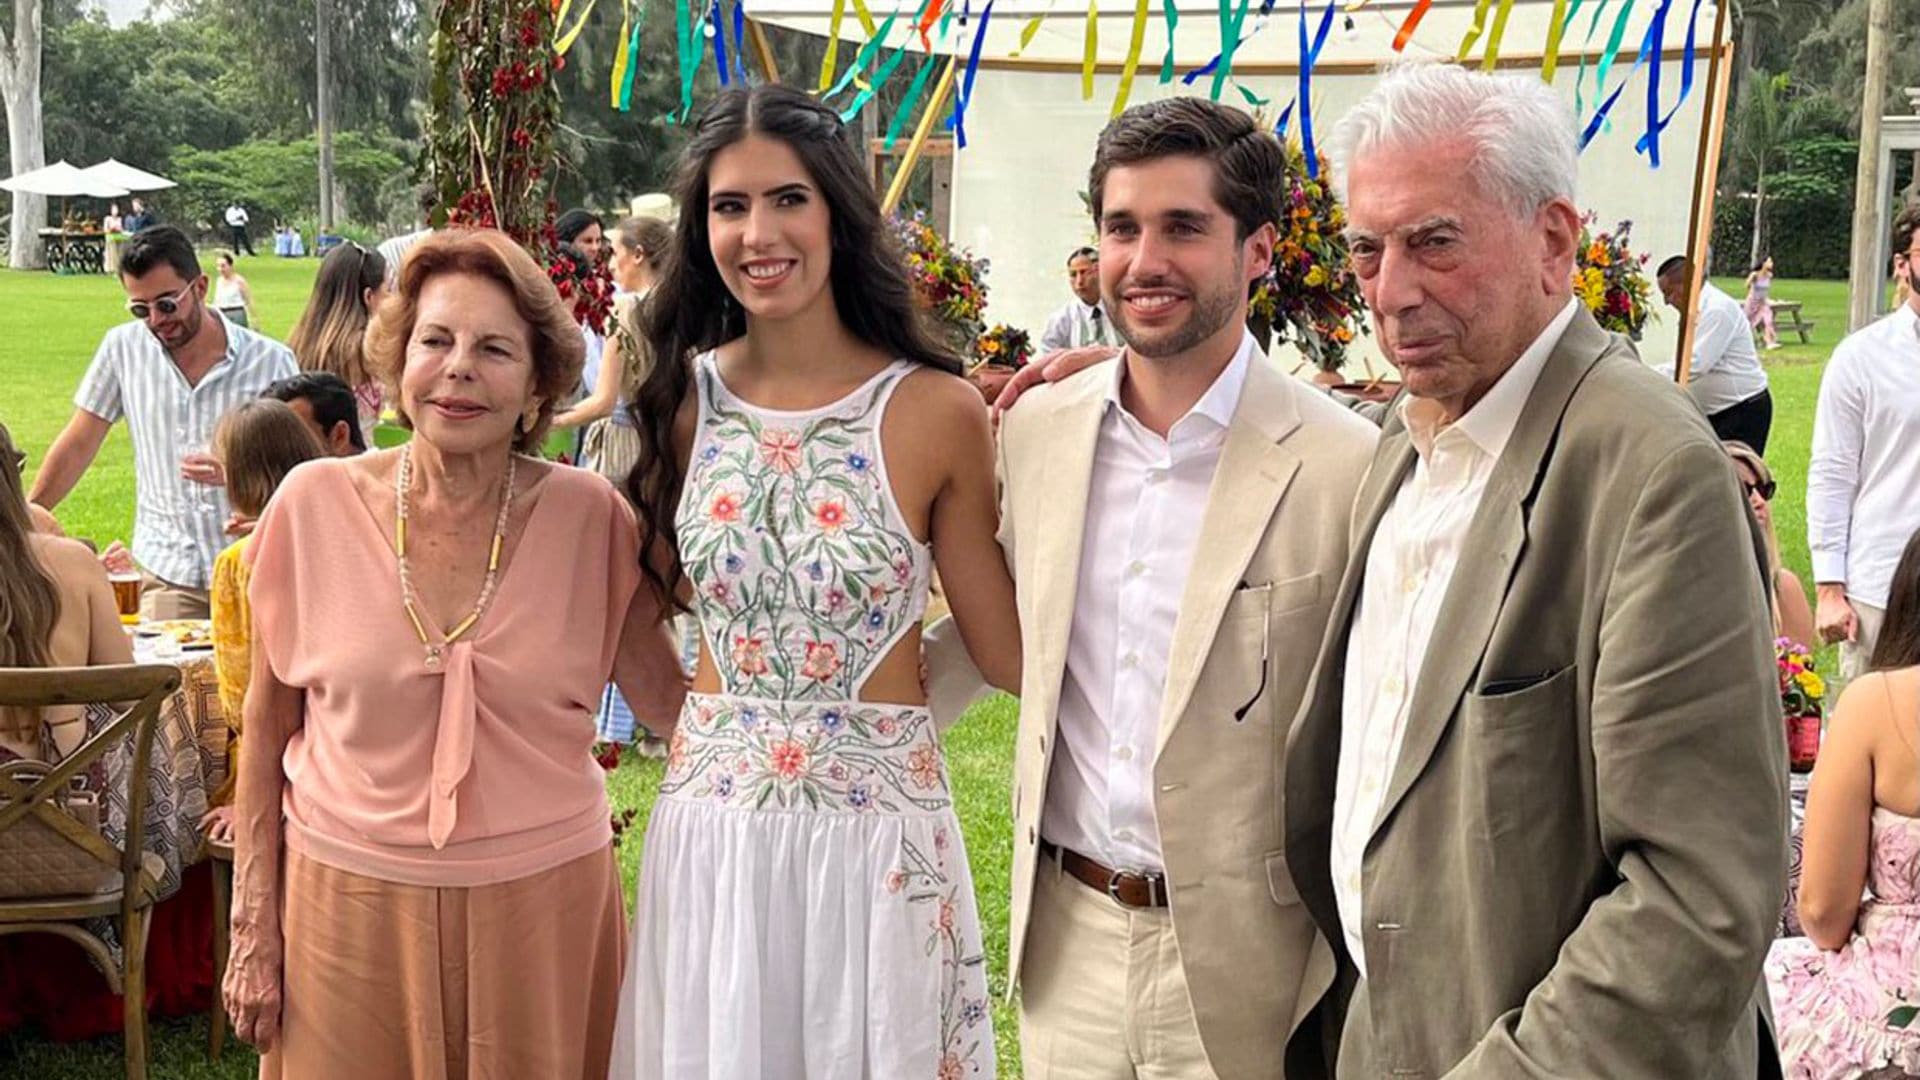 No te pierdas el baile de Mario Vargas Llosa en la fiesta preboda de su nieta Josefina en Lima